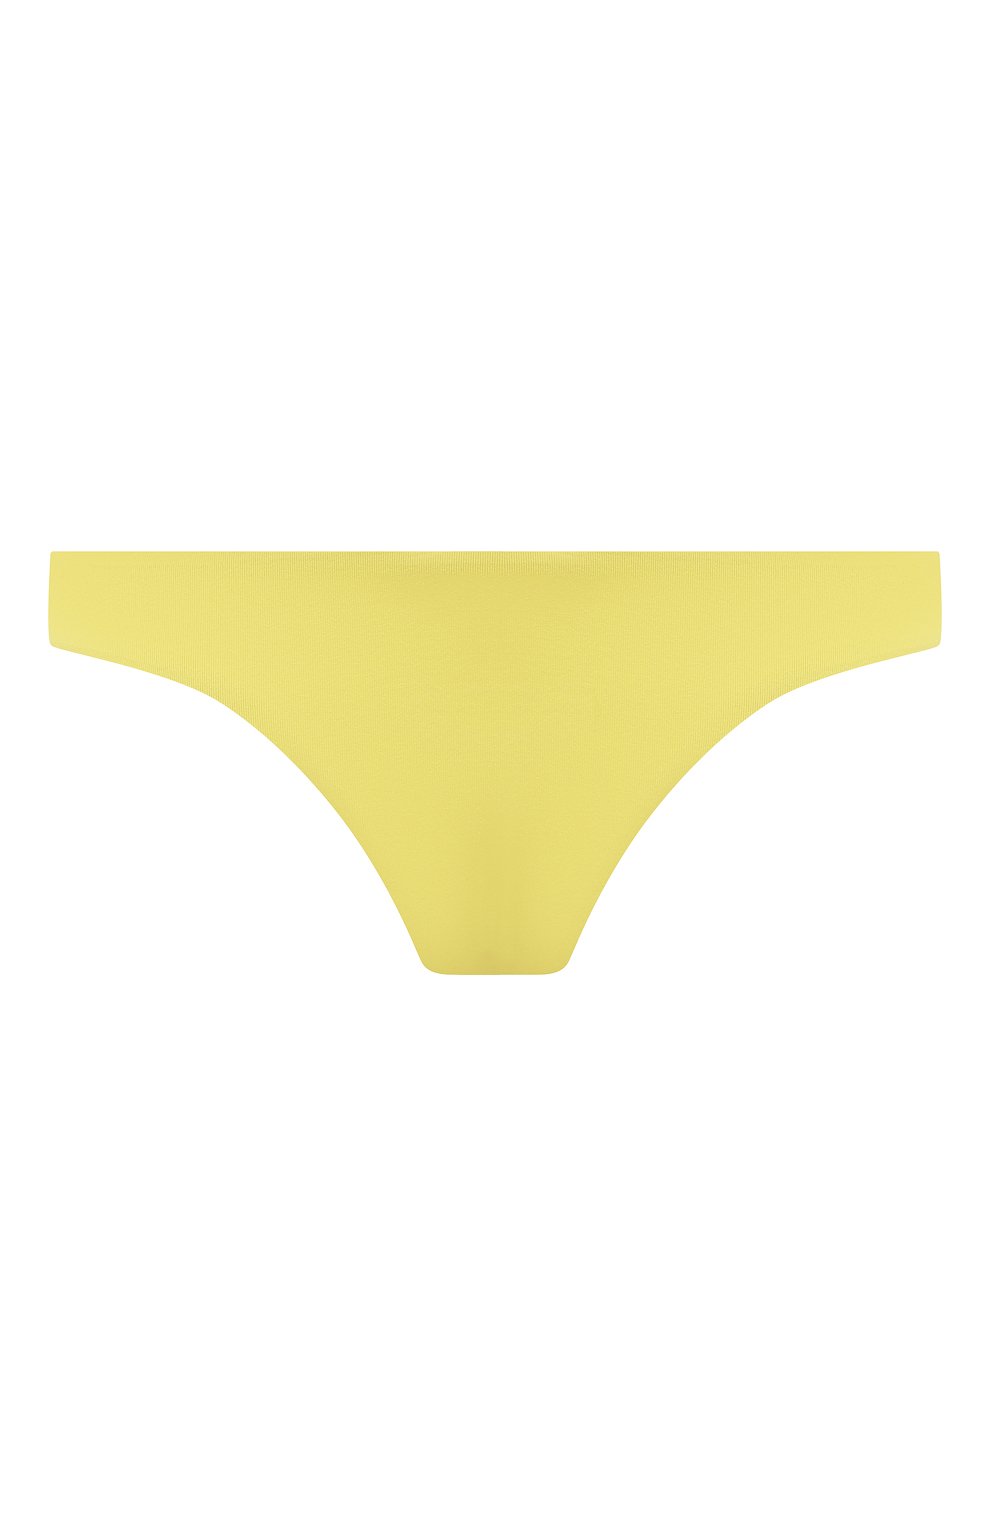 Женский плавки-бикини MELISSA ODABASH желтого цвета, арт. CAYMAN B0TT0M | Фото 1 (Женское Кросс-КТ: Раздельные купальники; Материал внешний: Синтетический материал)